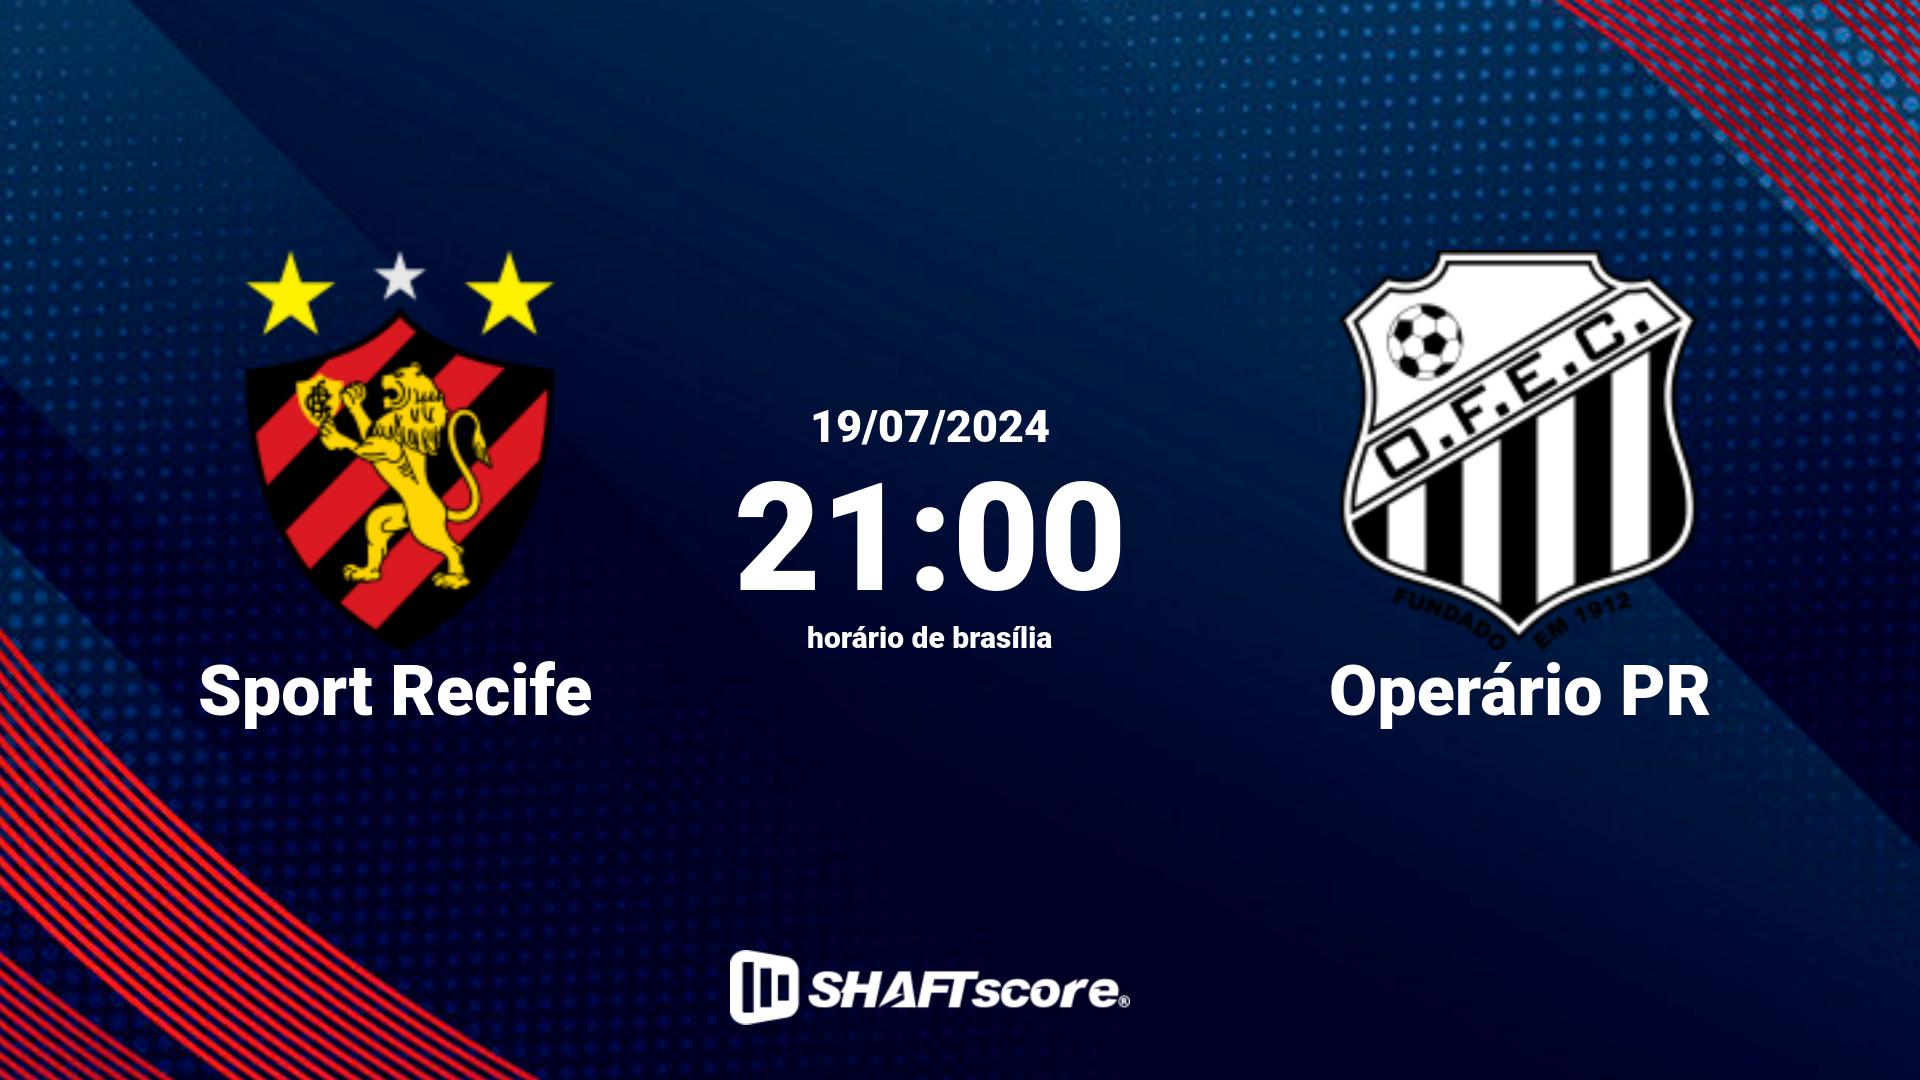 Estatísticas do jogo Sport Recife vs Operário PR 19.07 21:00